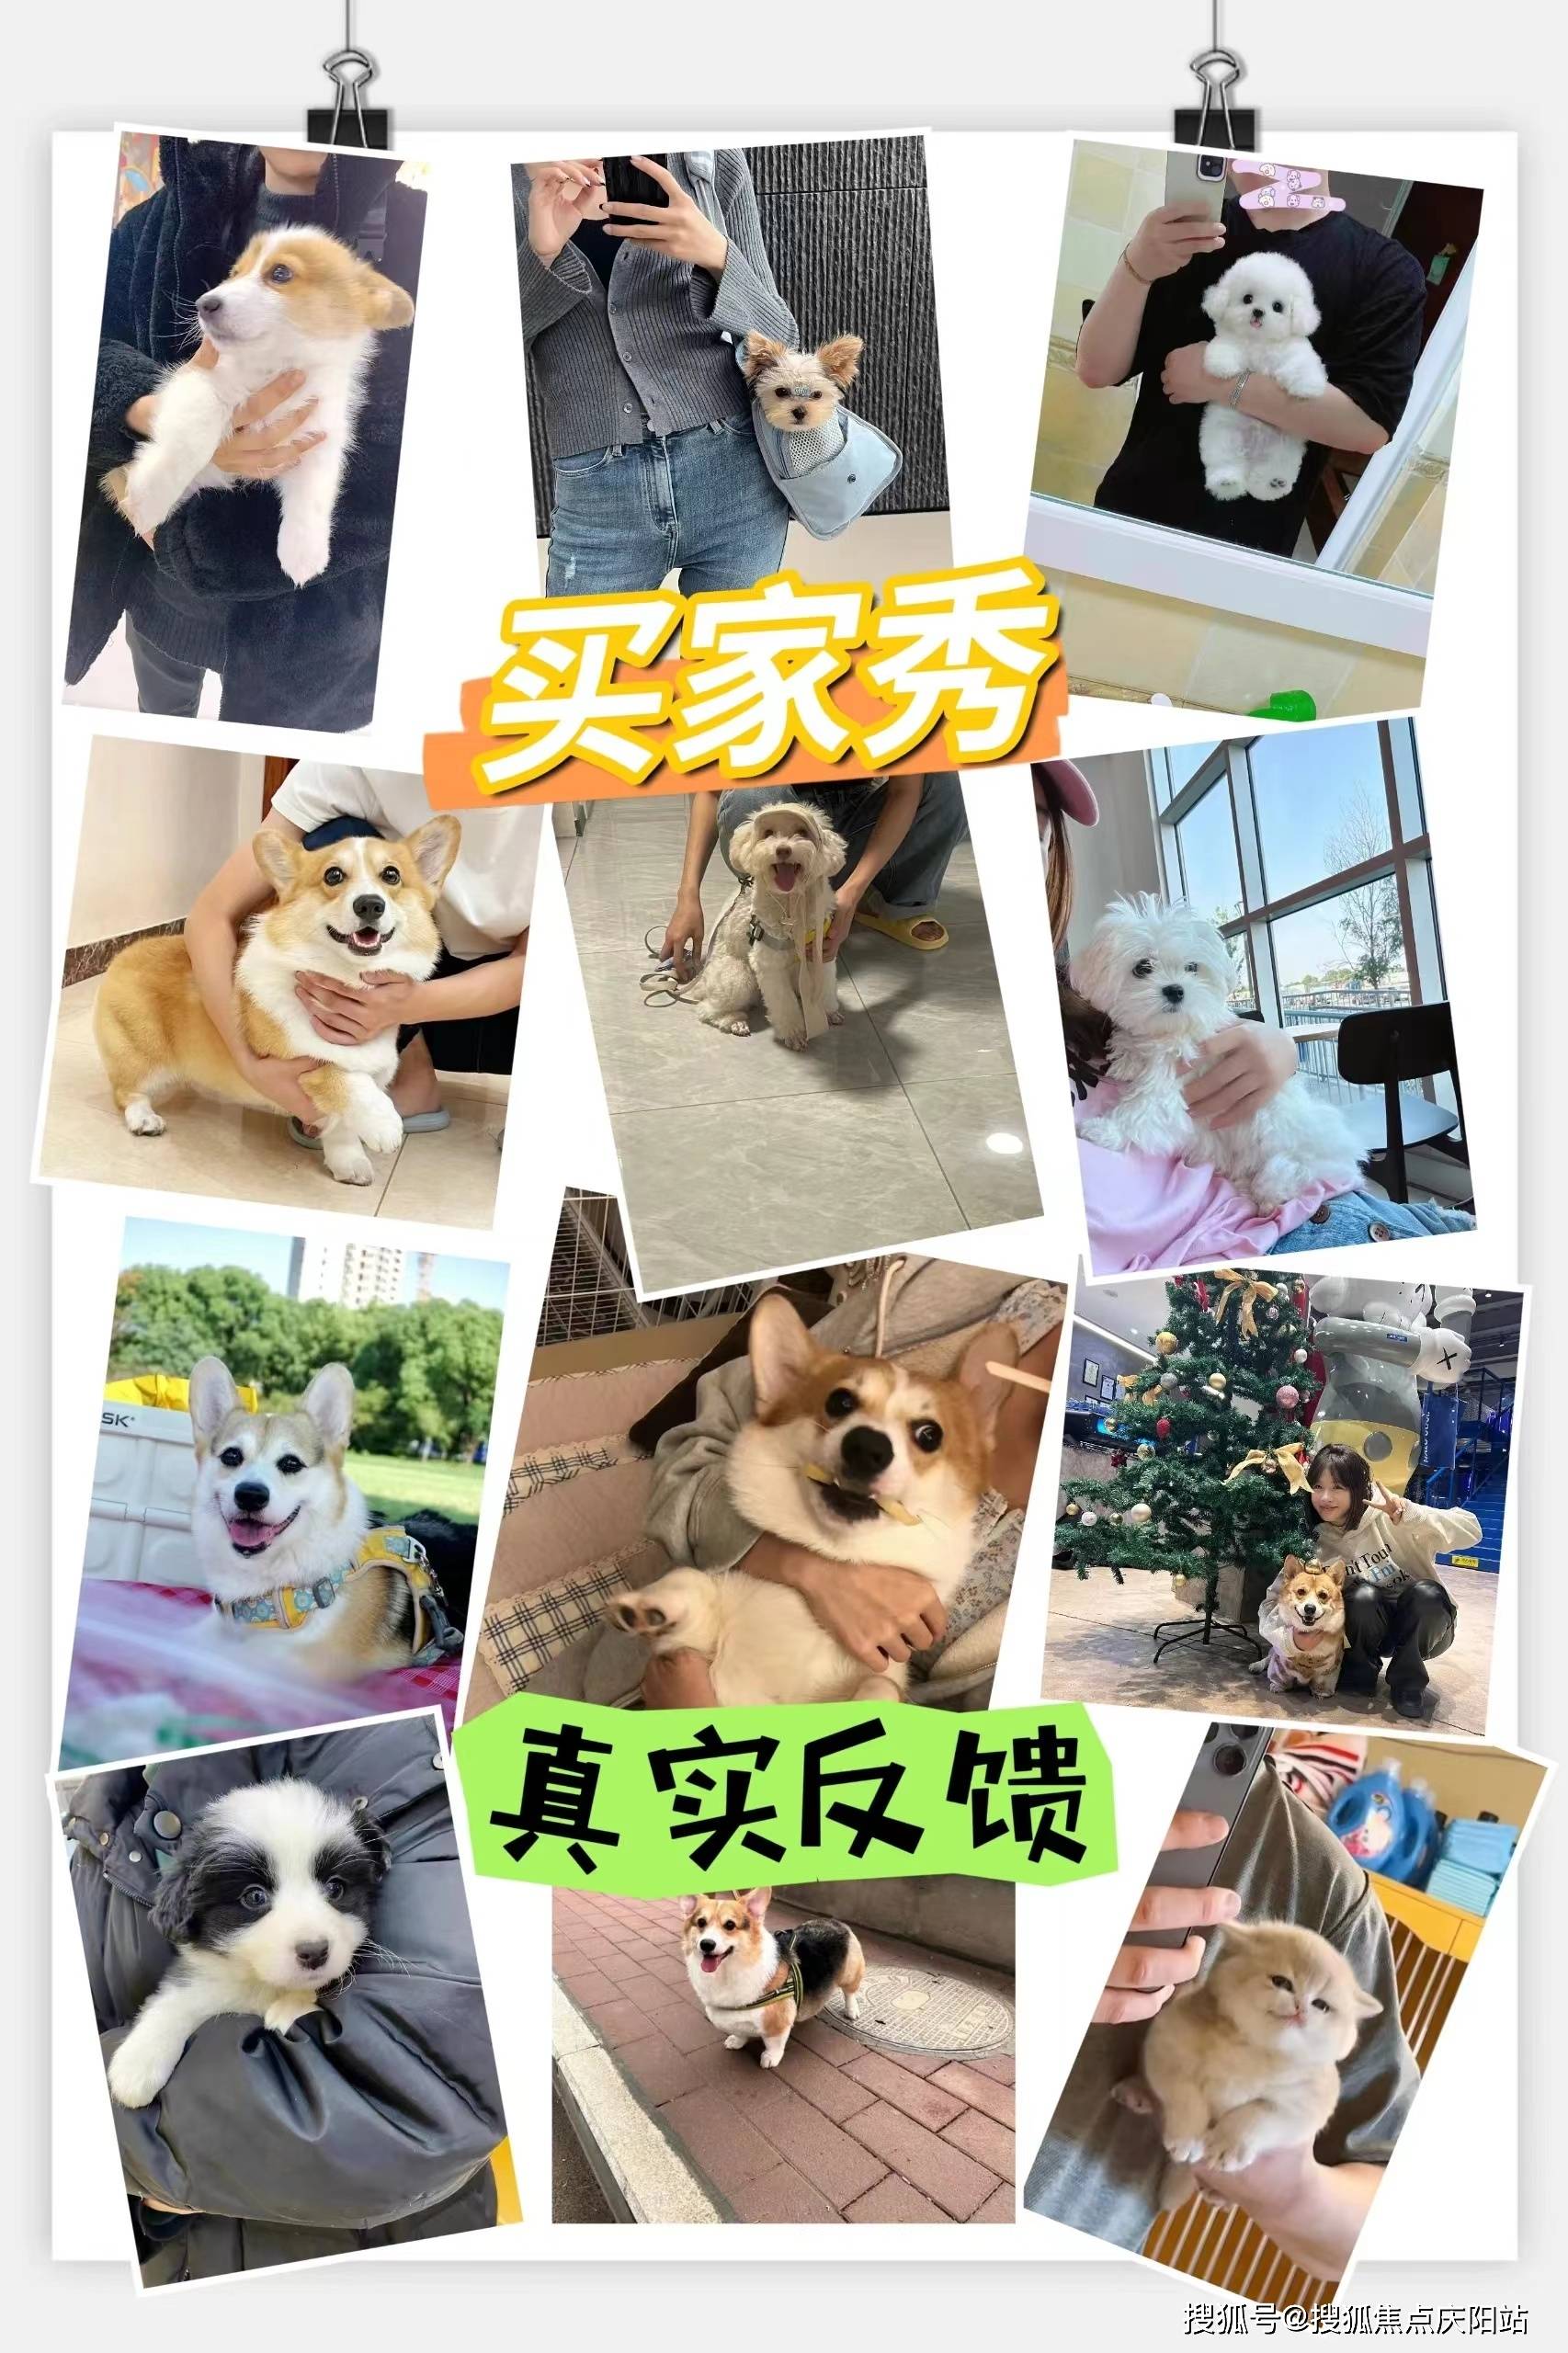 上海买英短蓝猫首页网站(上海浦东新区)哪家宠物店买英短蓝猫比较纯